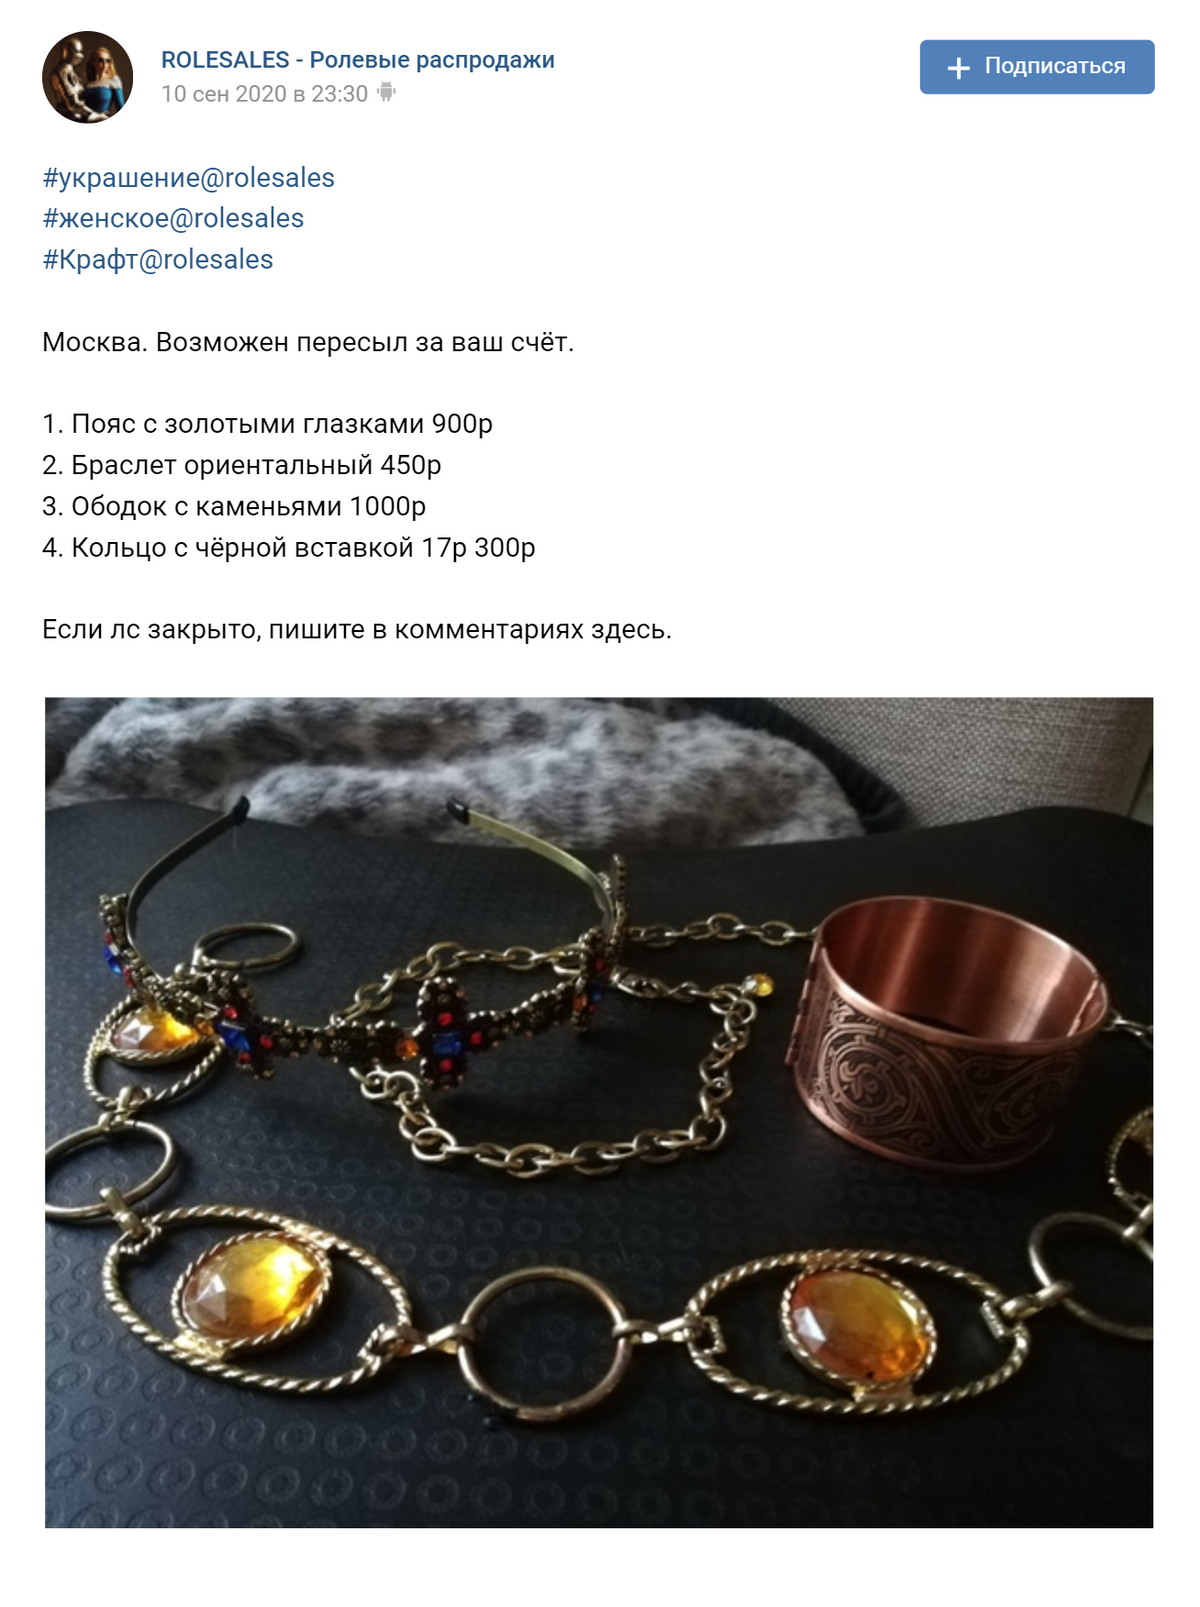 Вот такие кольца, ободки и колье продаются на&nbsp;барахолках в&nbsp;соцсетях. Источник: группа Rolesales